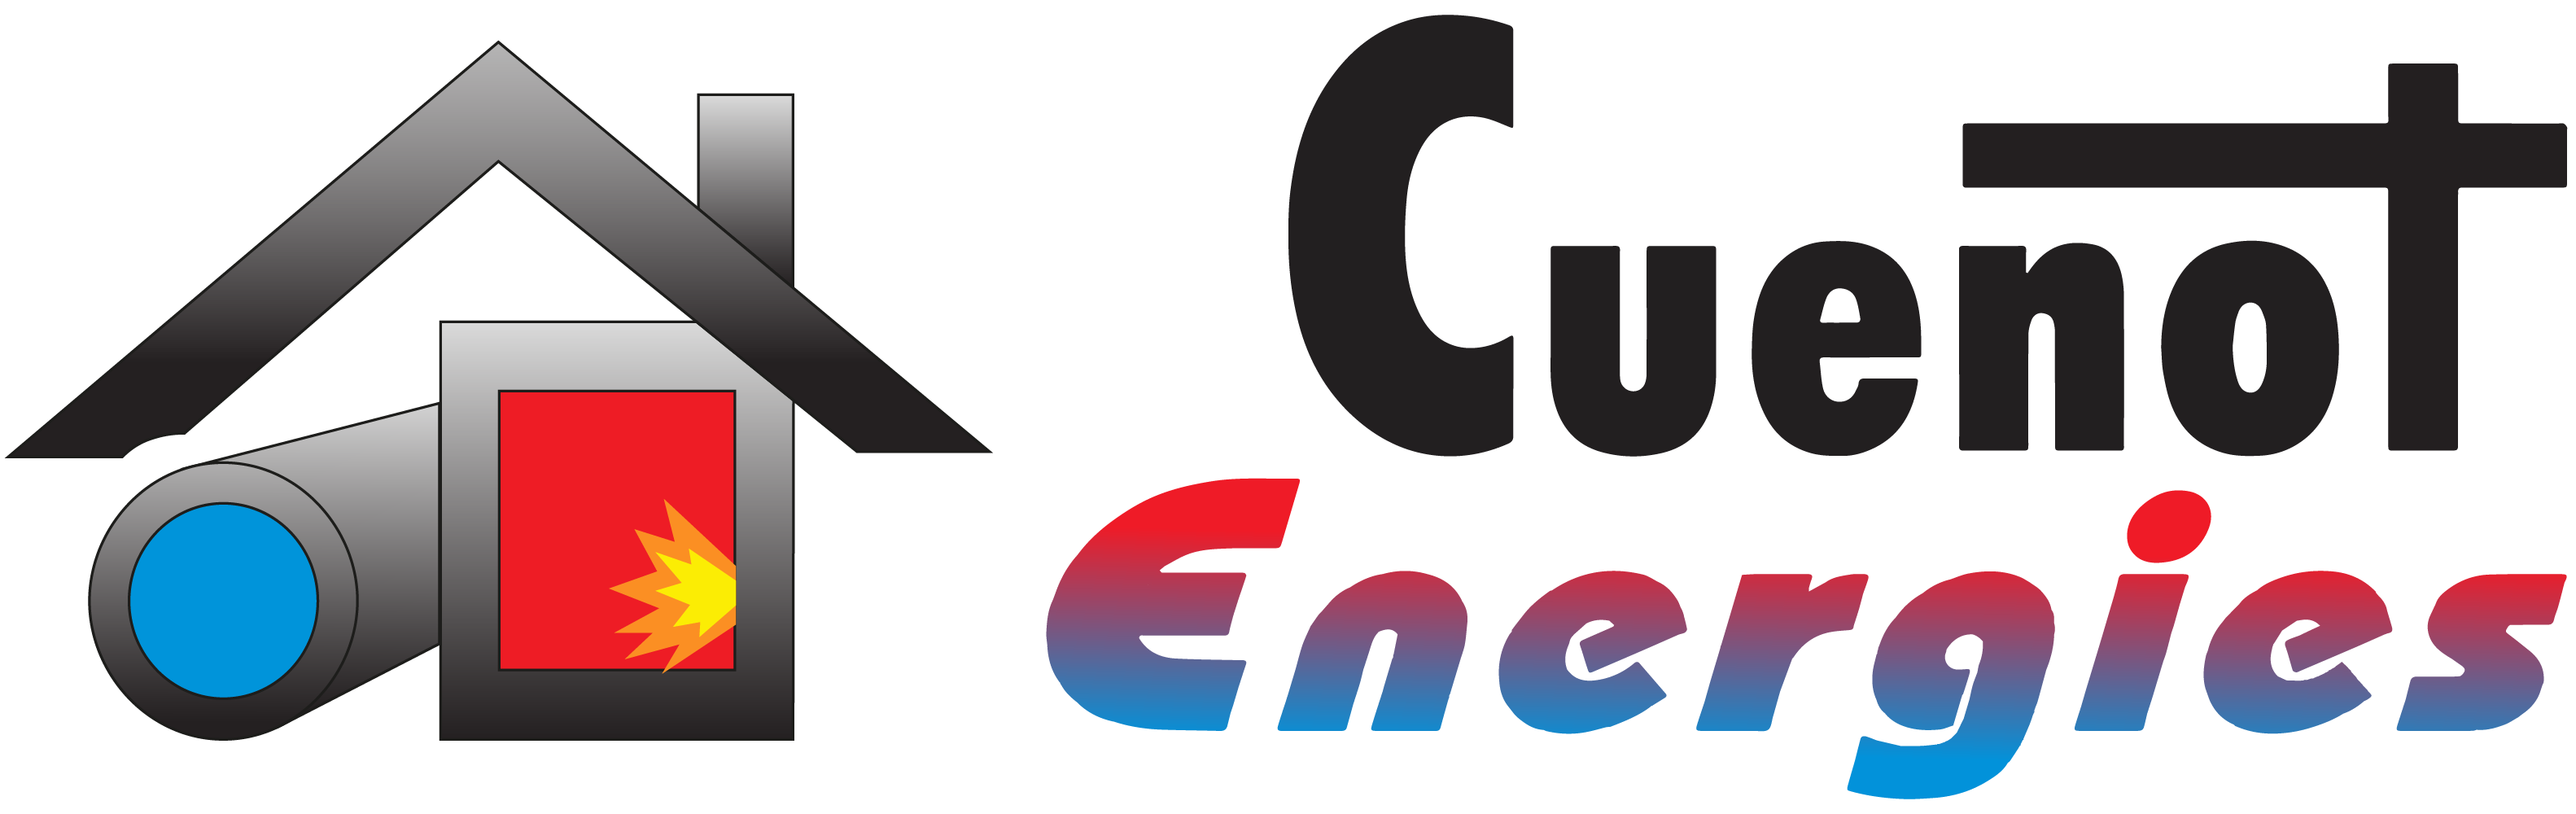 logo-Cuenot Energies